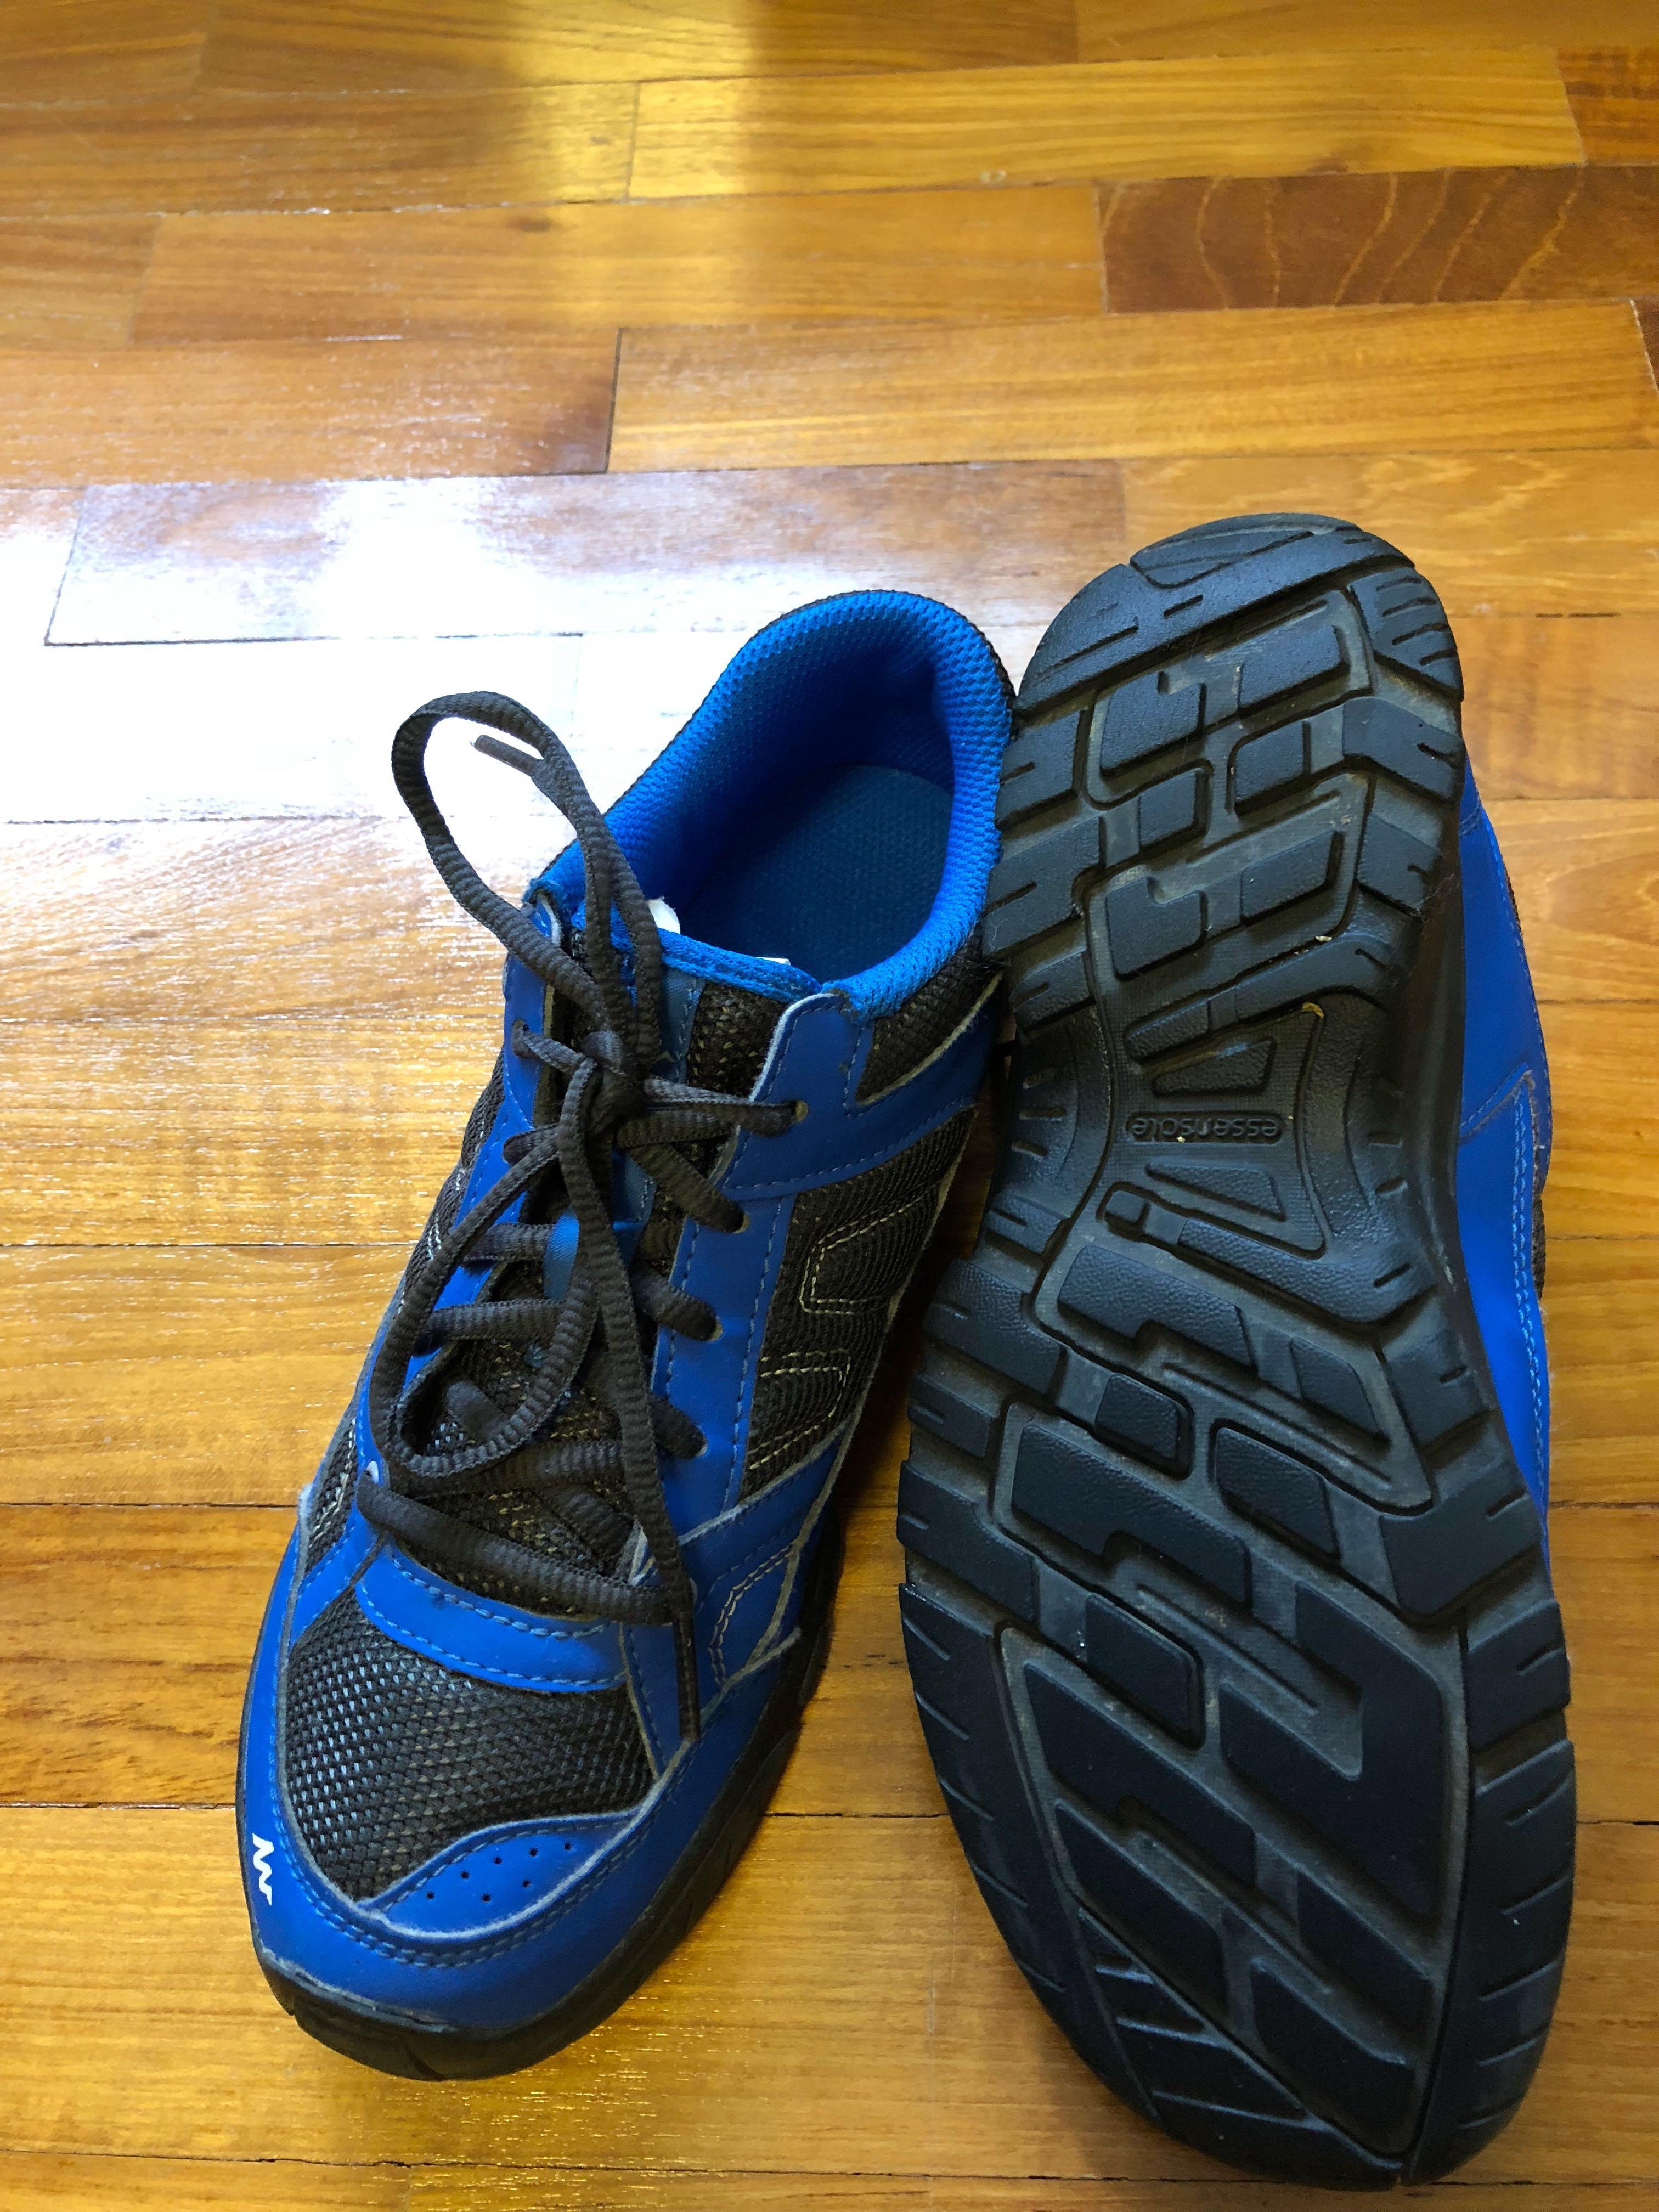 Boys hiking shoes Decathlon size UK 3 